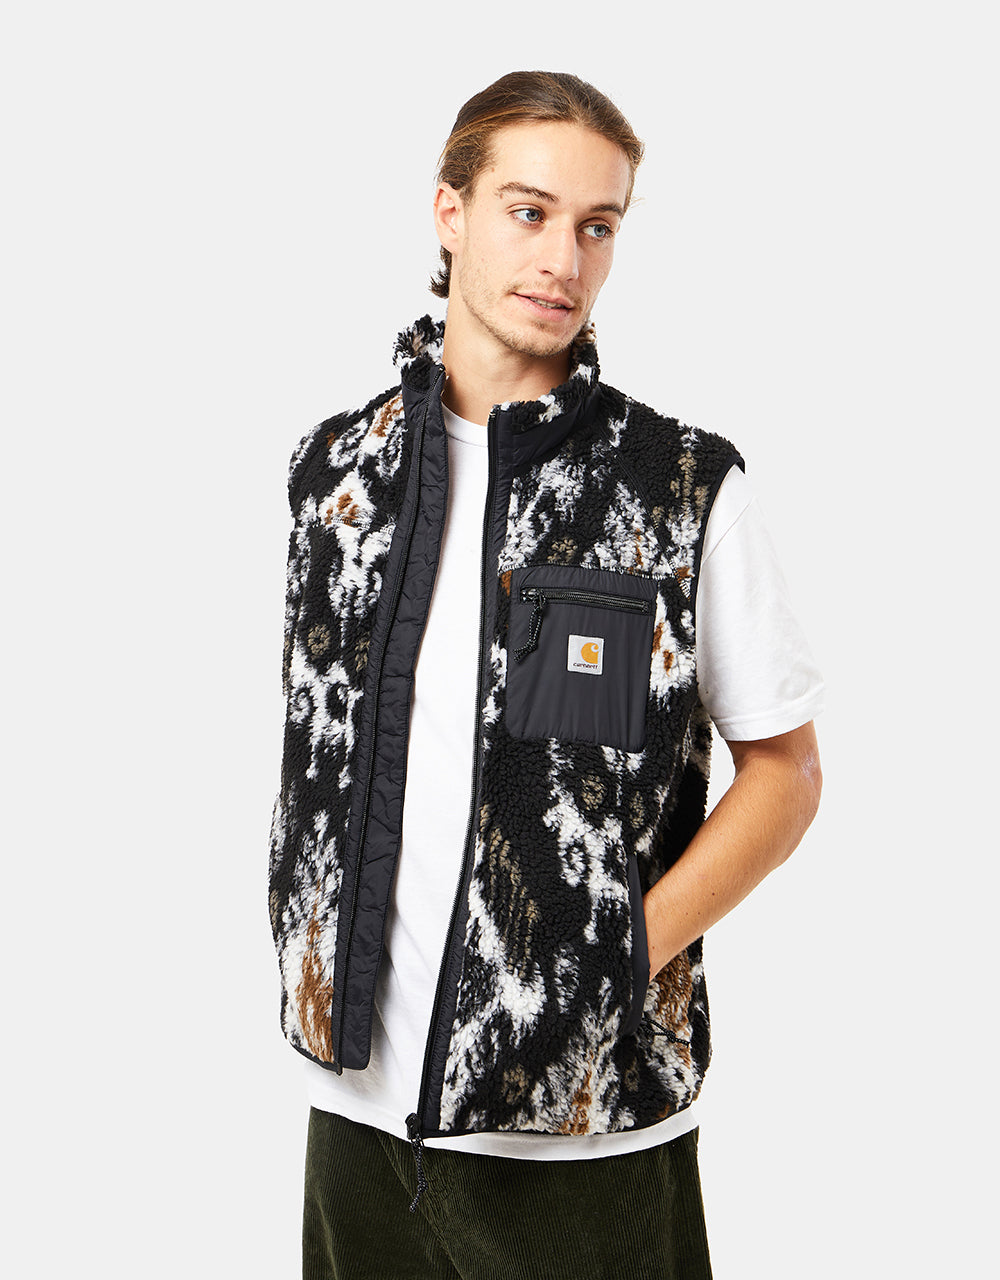 Carhartt WIP Prentis Vest Liner - Baru Jacquard/Black/Black